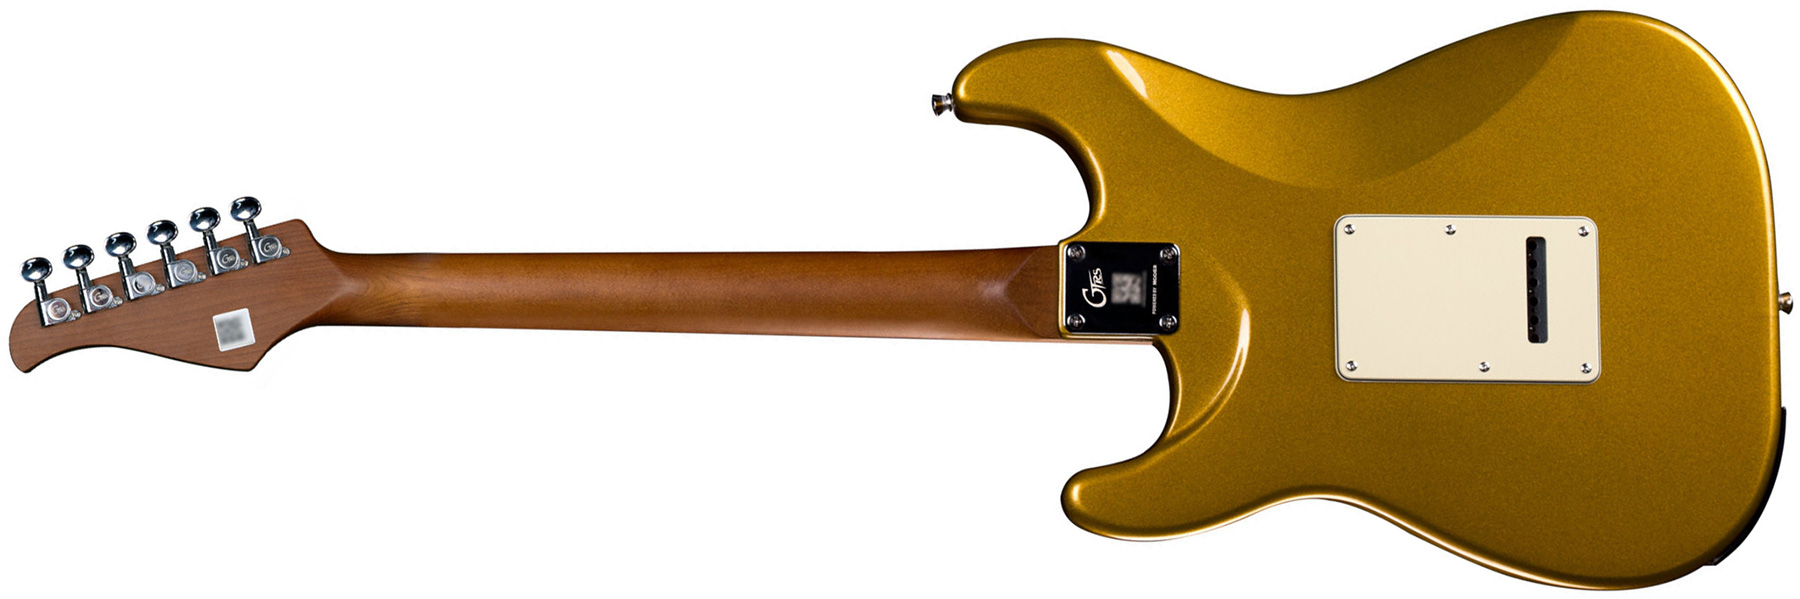 Mooer Gtrs S800 Hss Trem Rw - Gold - MIDI / Digital elektrische gitaar - Variation 1